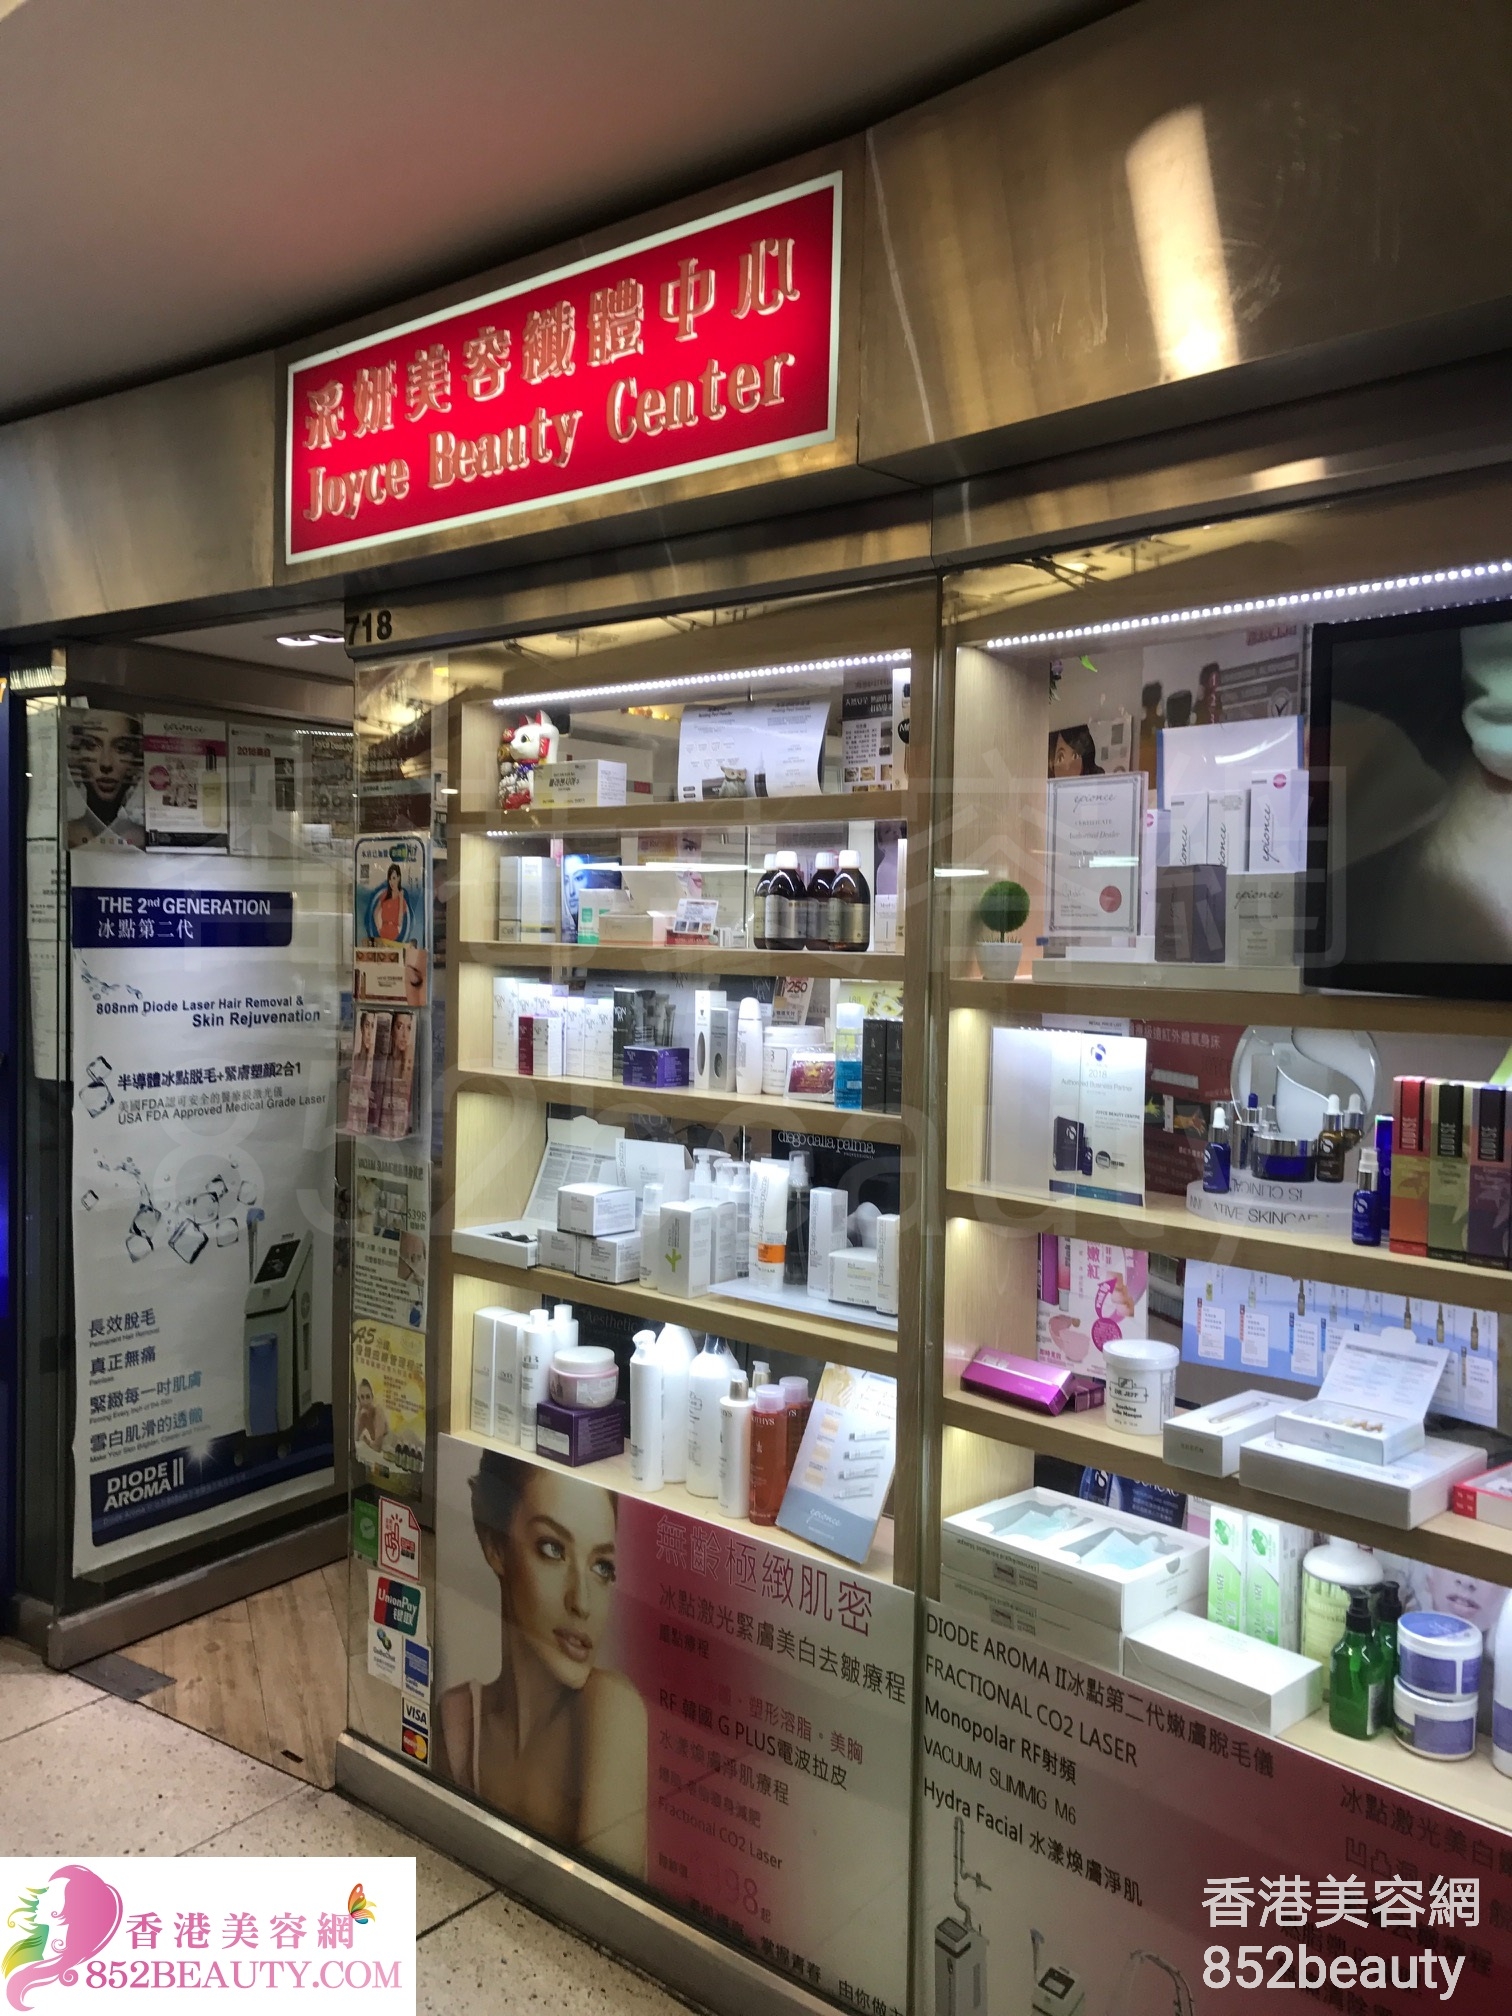 眼部護理: 采妍美容纖體中心 Joyce Beauty Center (西九龍中心)